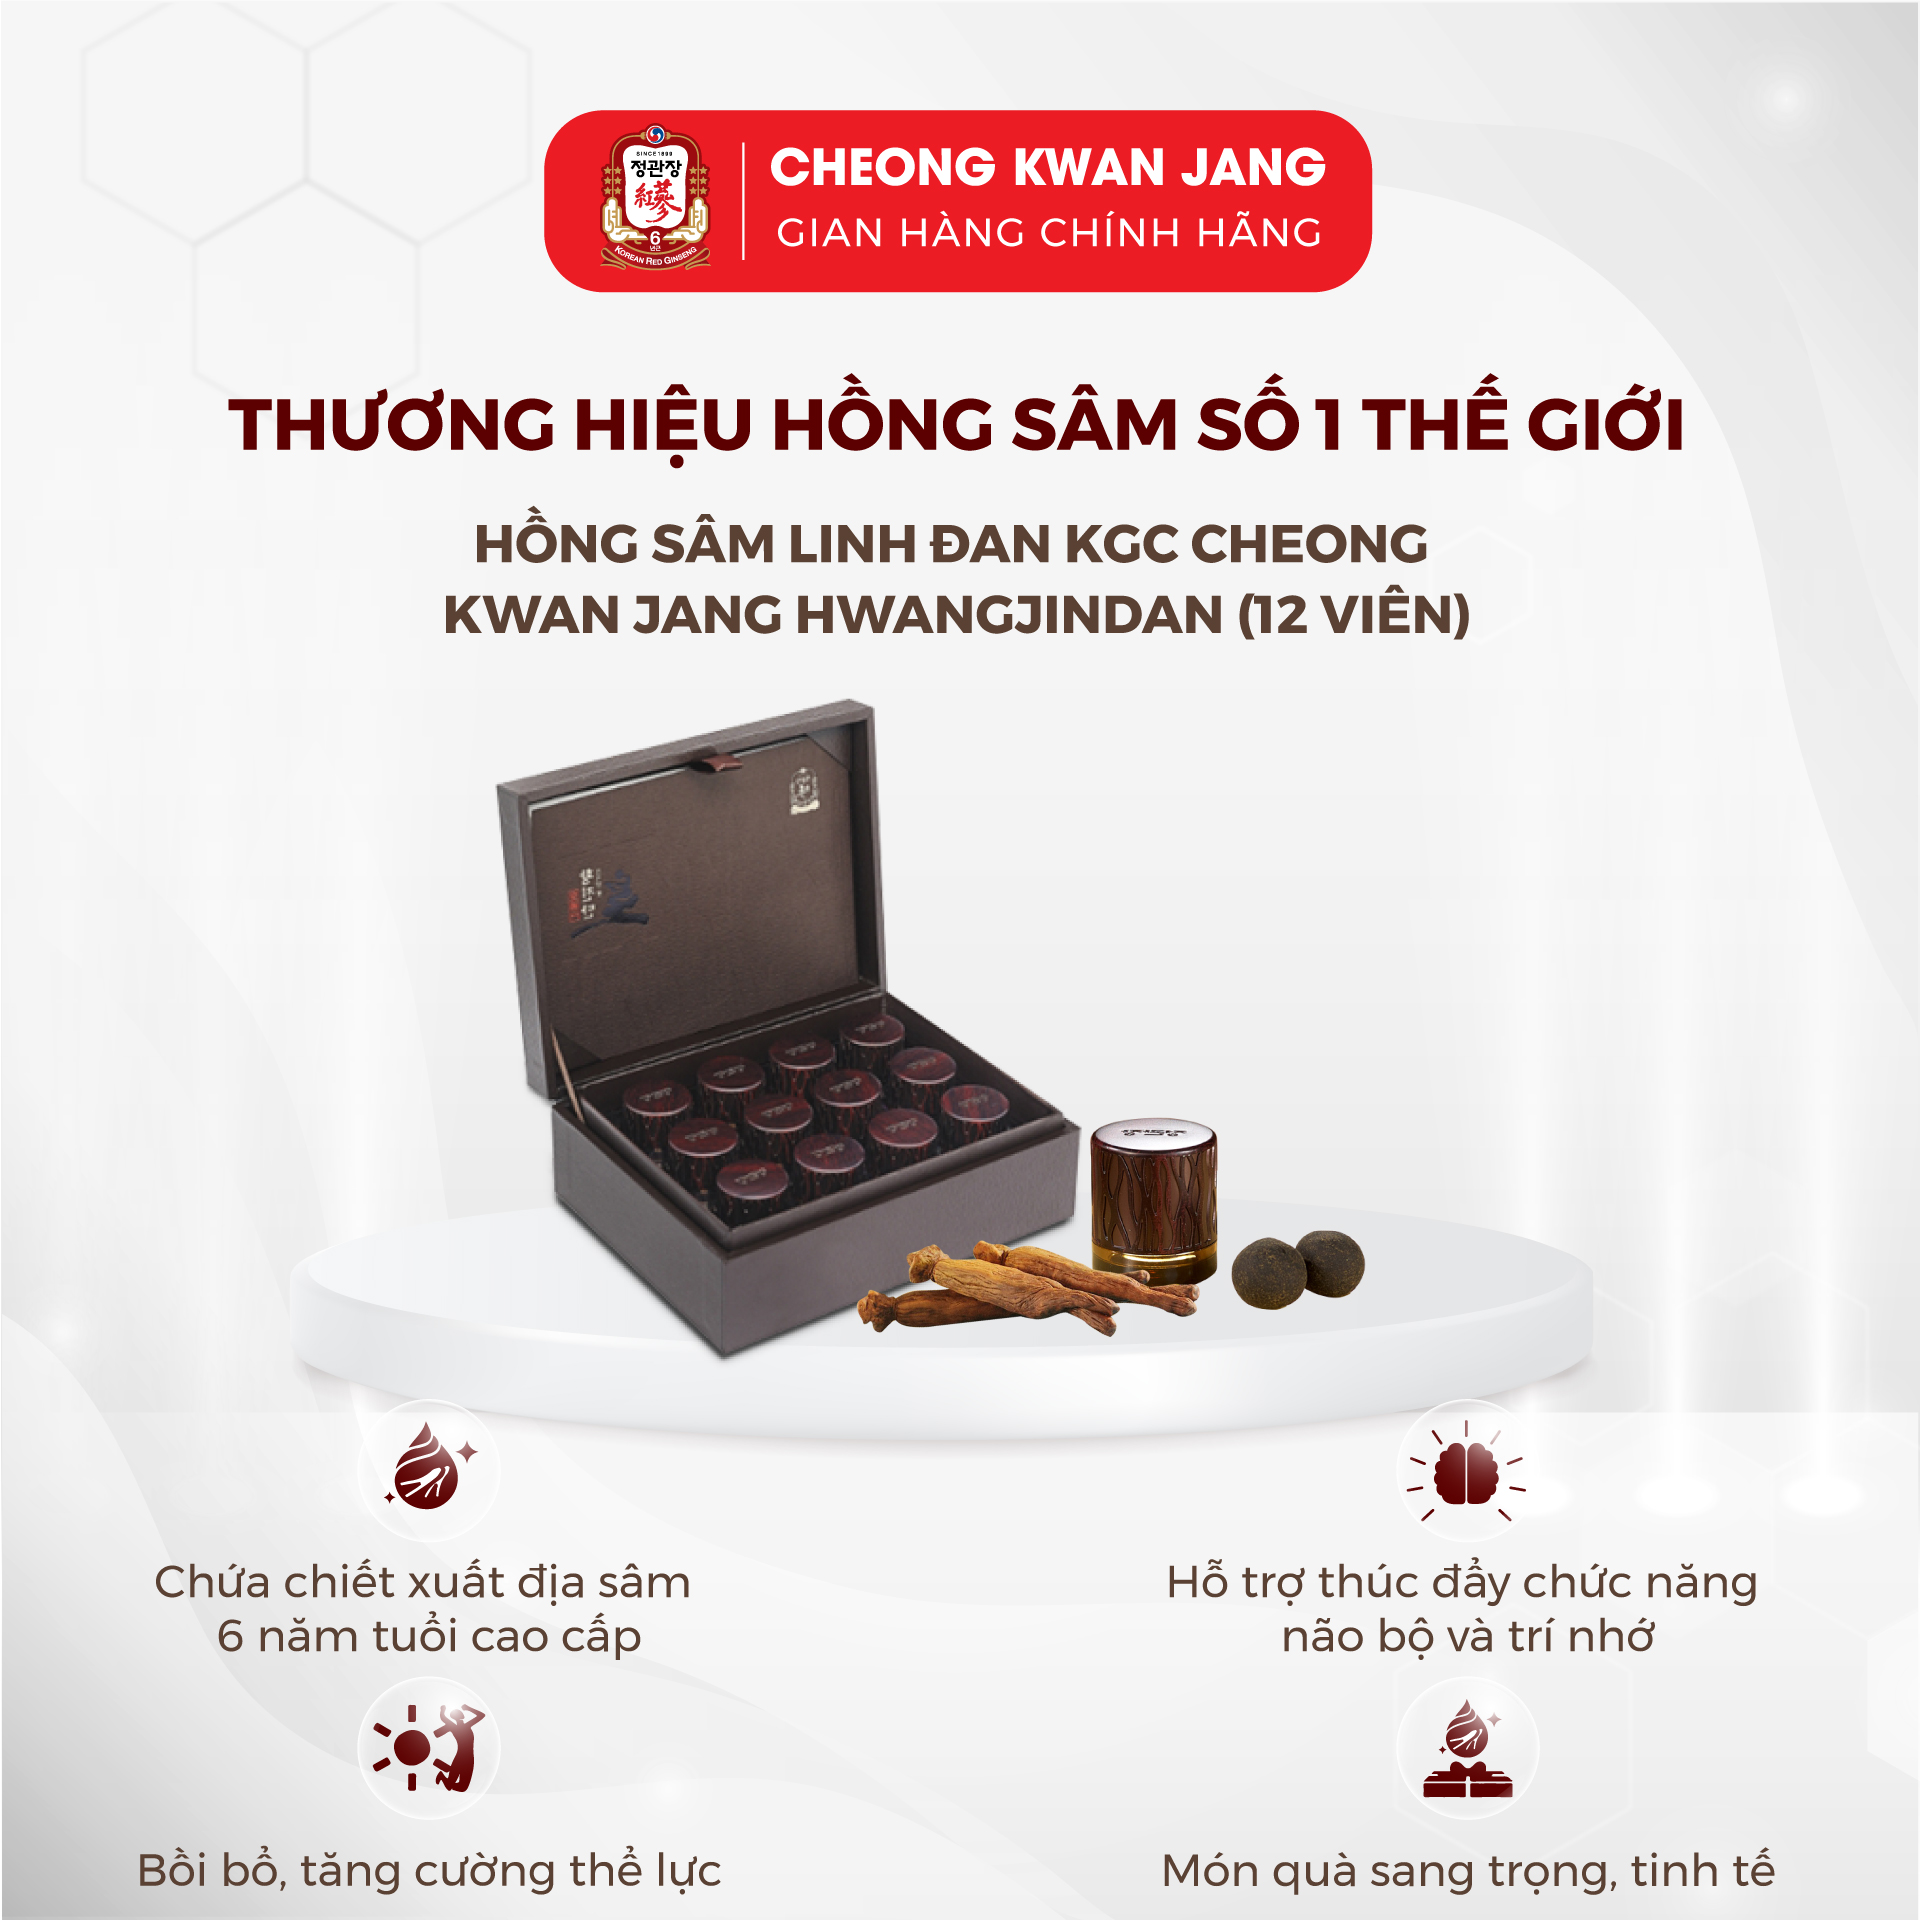 Viên Hồng Sâm Linh Đan KGC Cheong Kwan Jang Hwangjindan (12 viên)